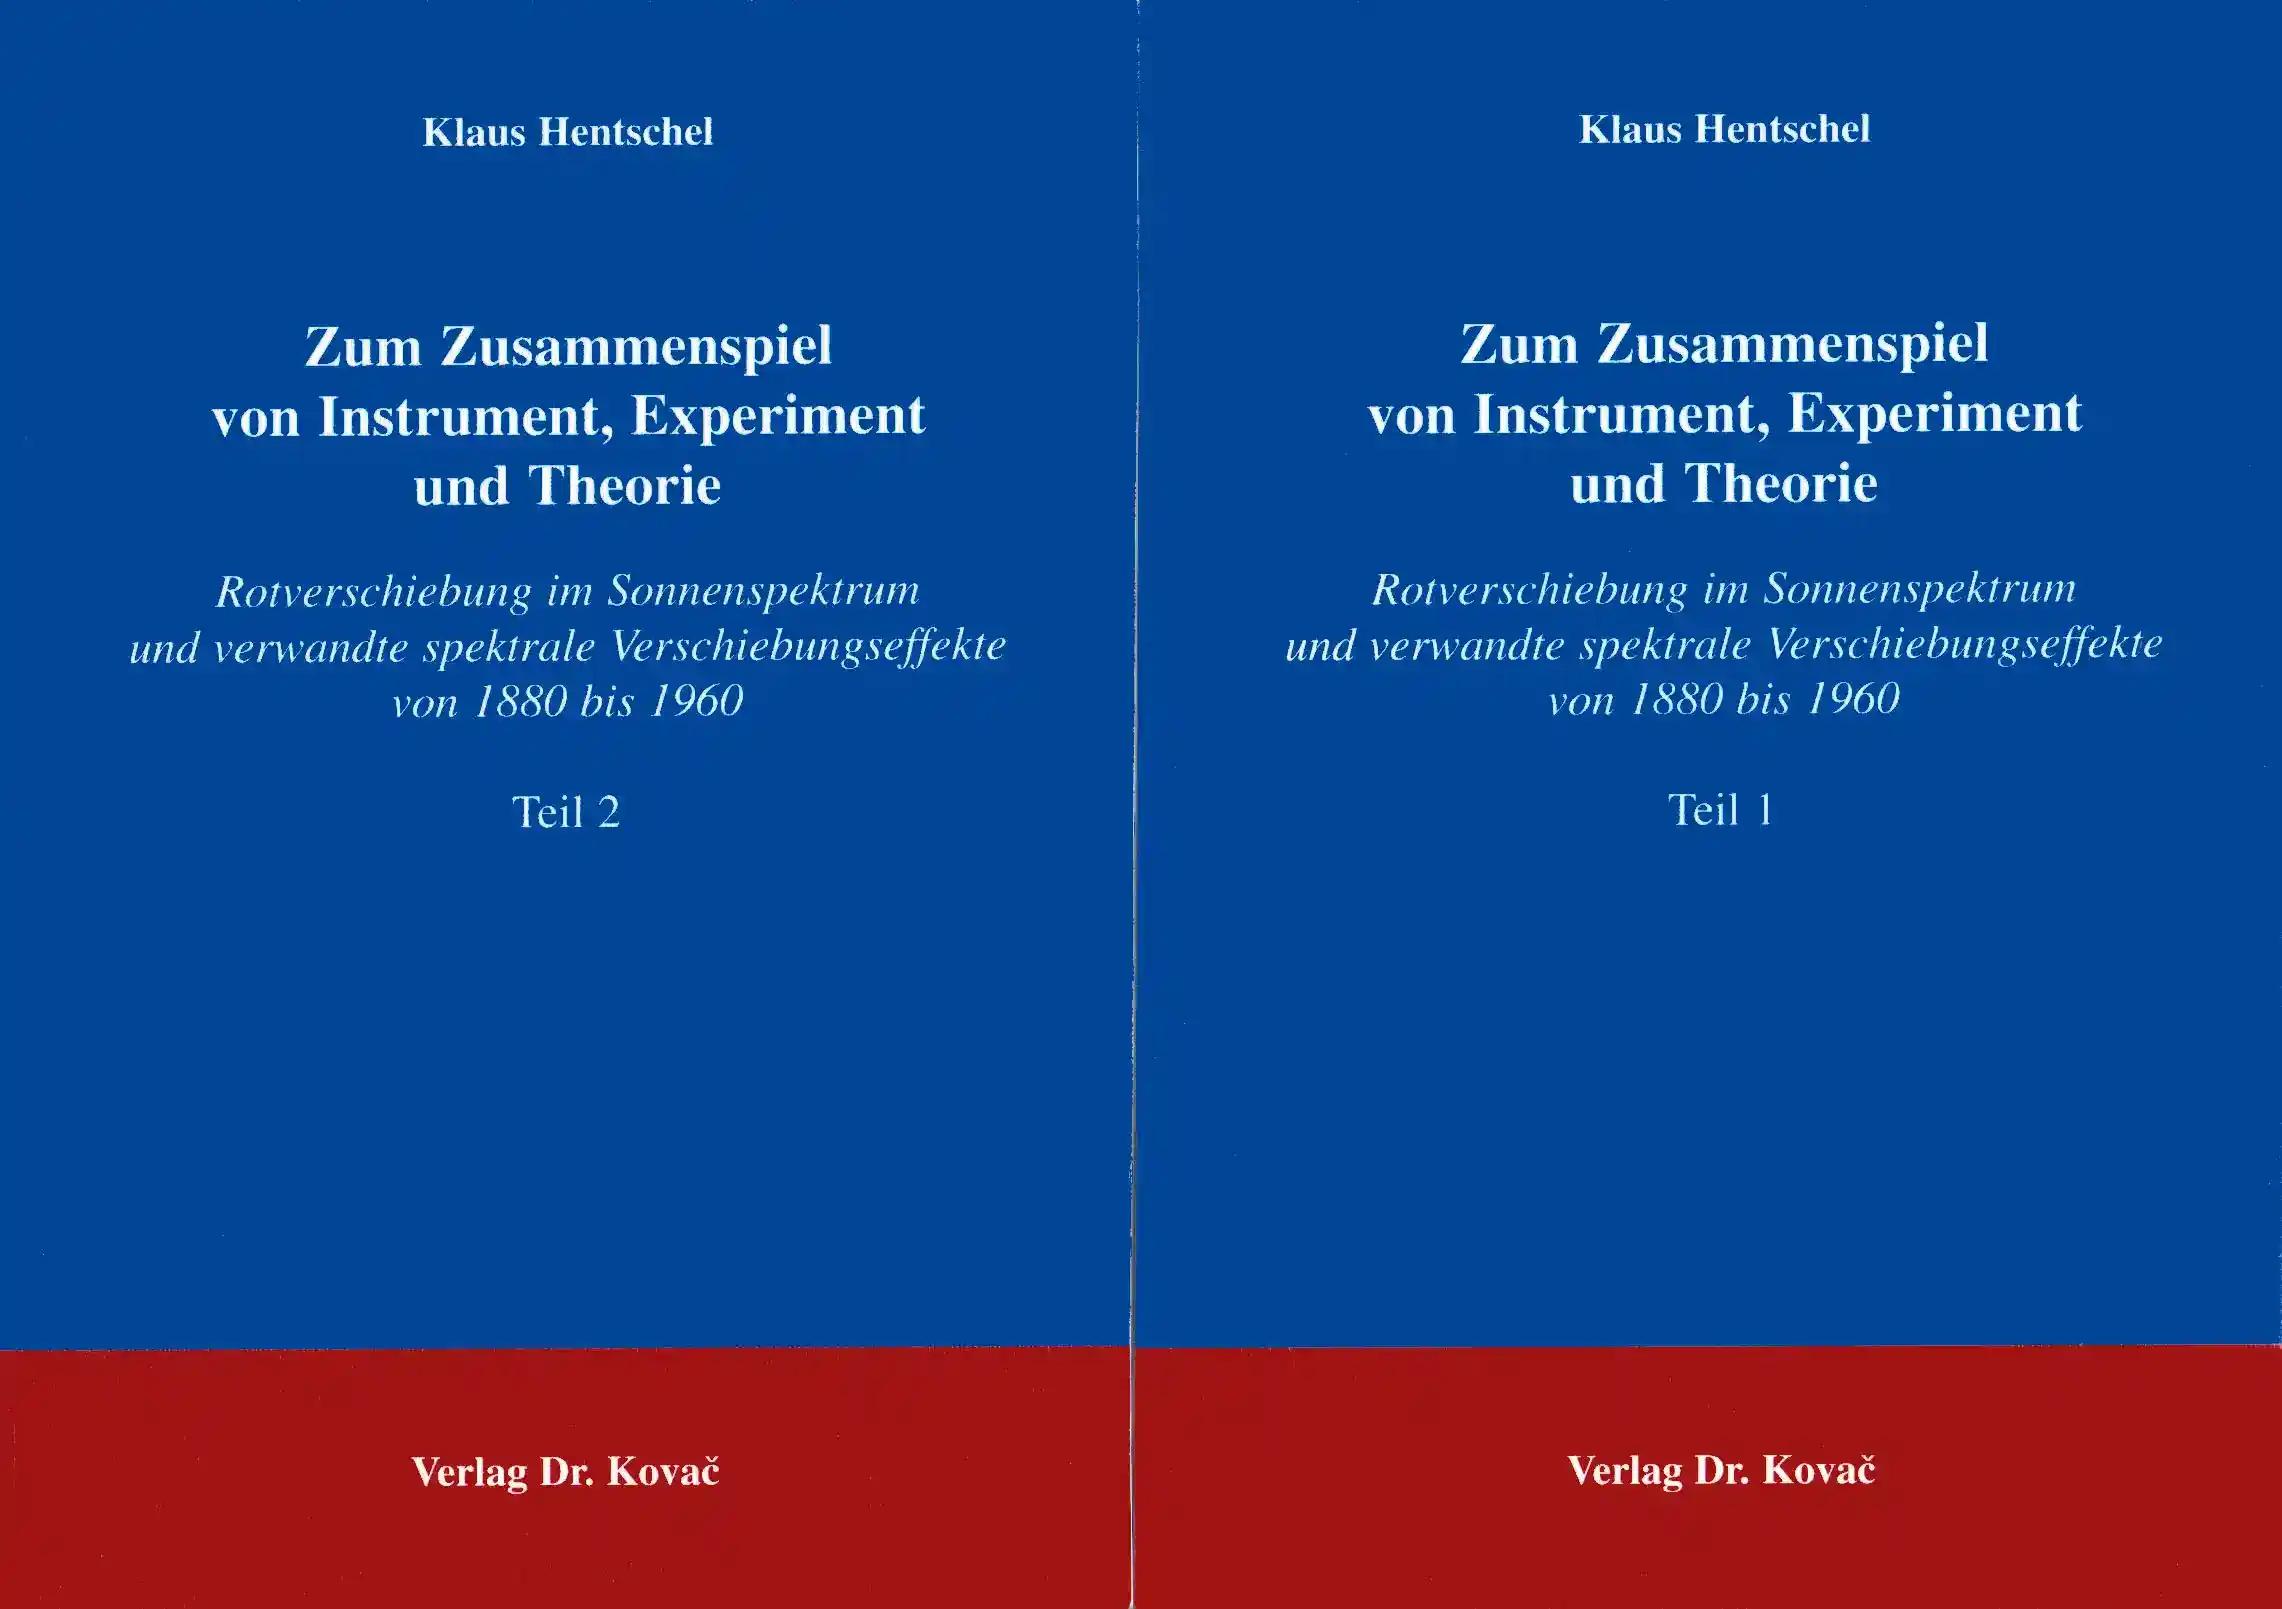 Zum Zusammenspiel von Instrument, Experiment und Theorie, Rotverschiebung im Sonnenspektrum und verwandte spektrale Verschiebungseffekte von 1880 bis 1960 - Klaus Hentschel